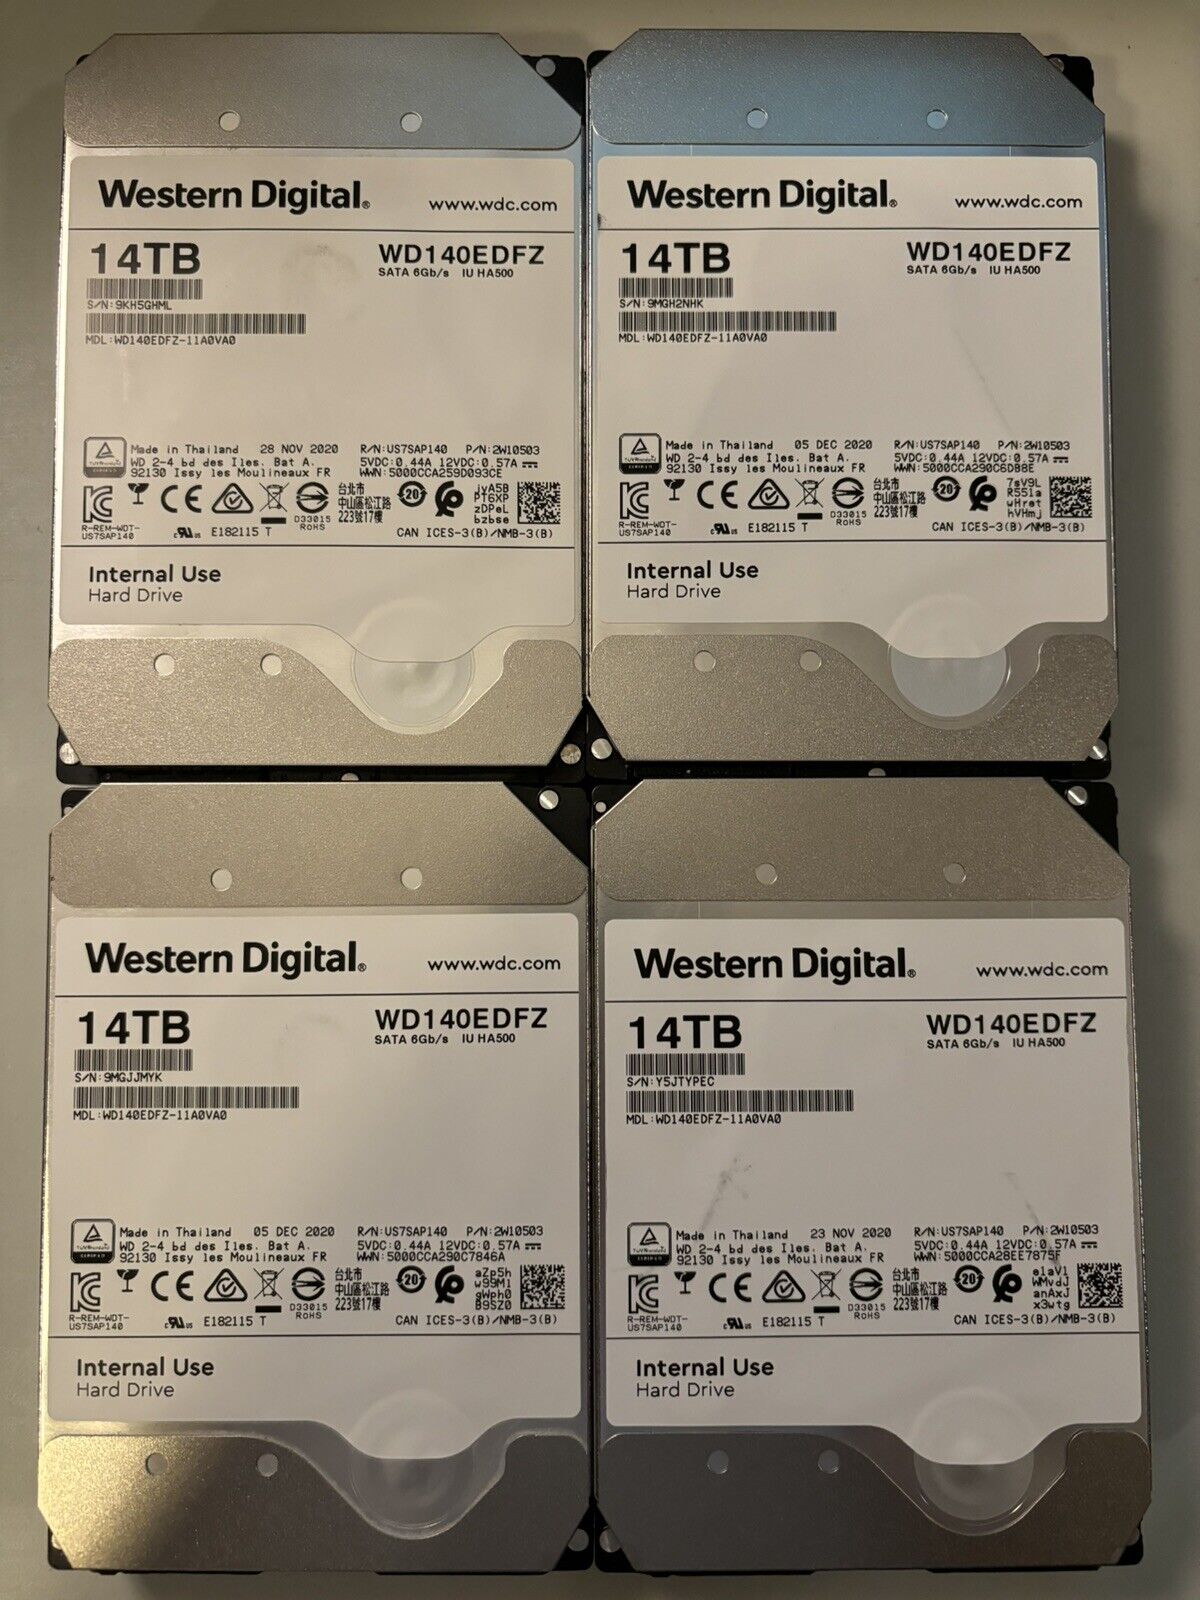 Western Digital 14TB 5400 RPM SATA 6Gb/s 3.5'' HDD - WD140EDFZ